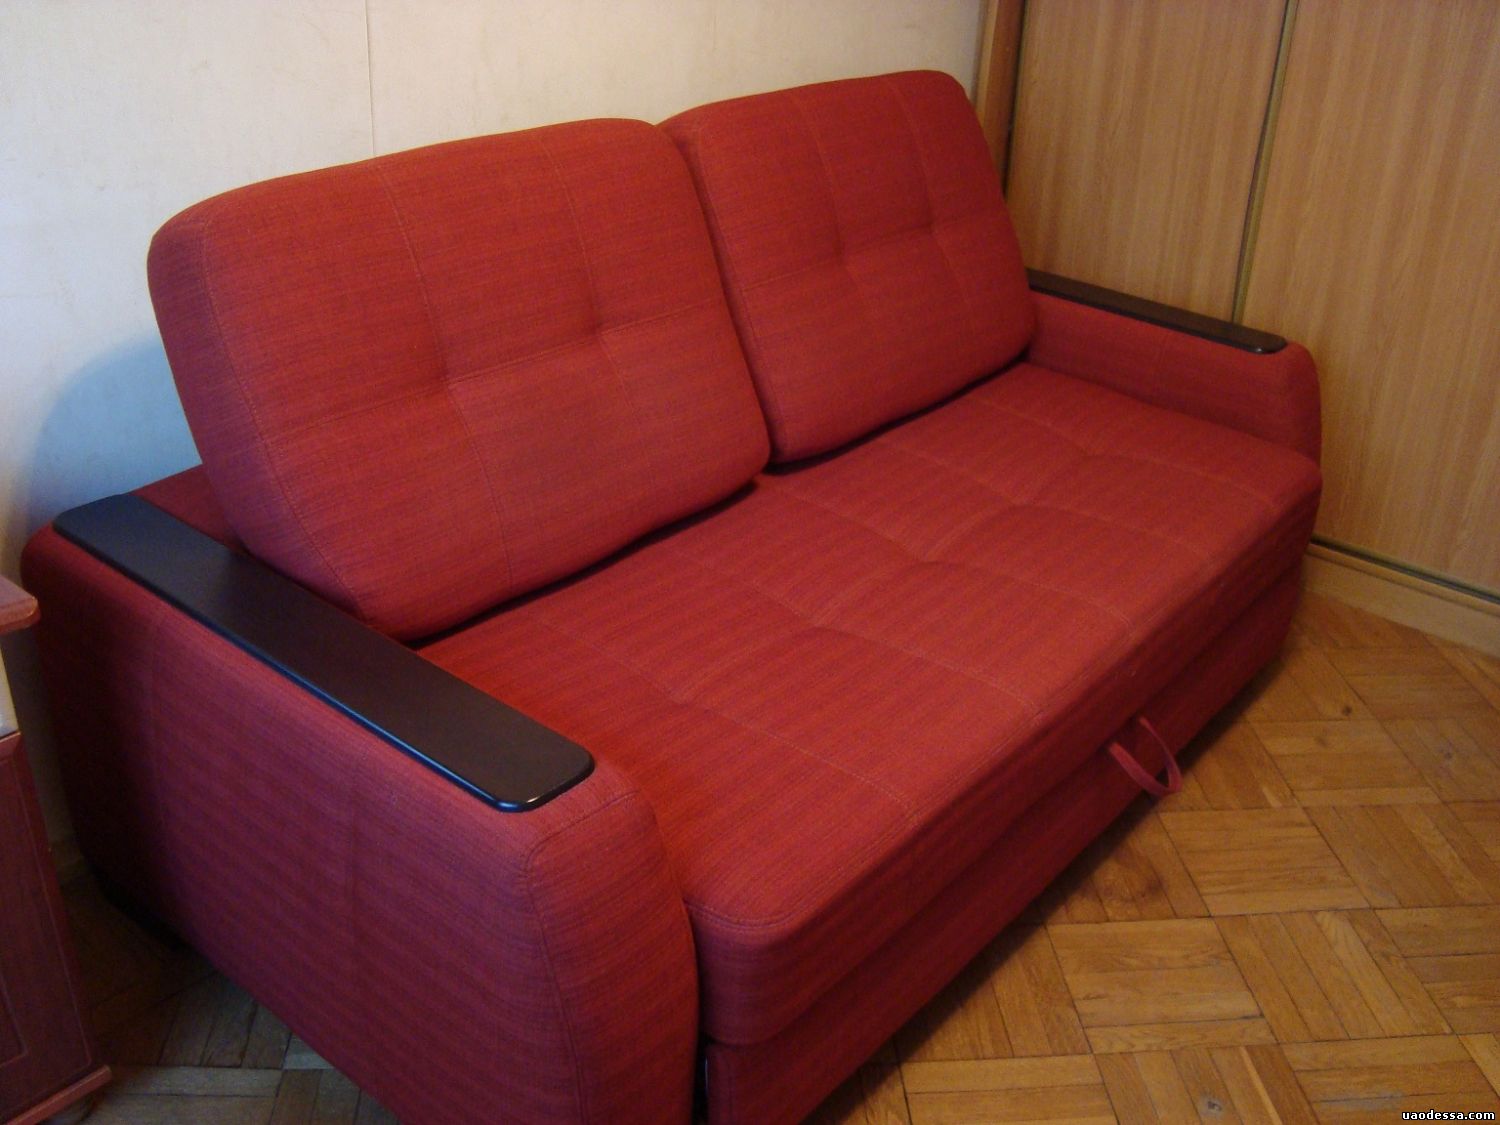 Мебель бу купить диваны. Дешевые диваны. Диван б/у. Бэушный диван. Самый дешевый диван.